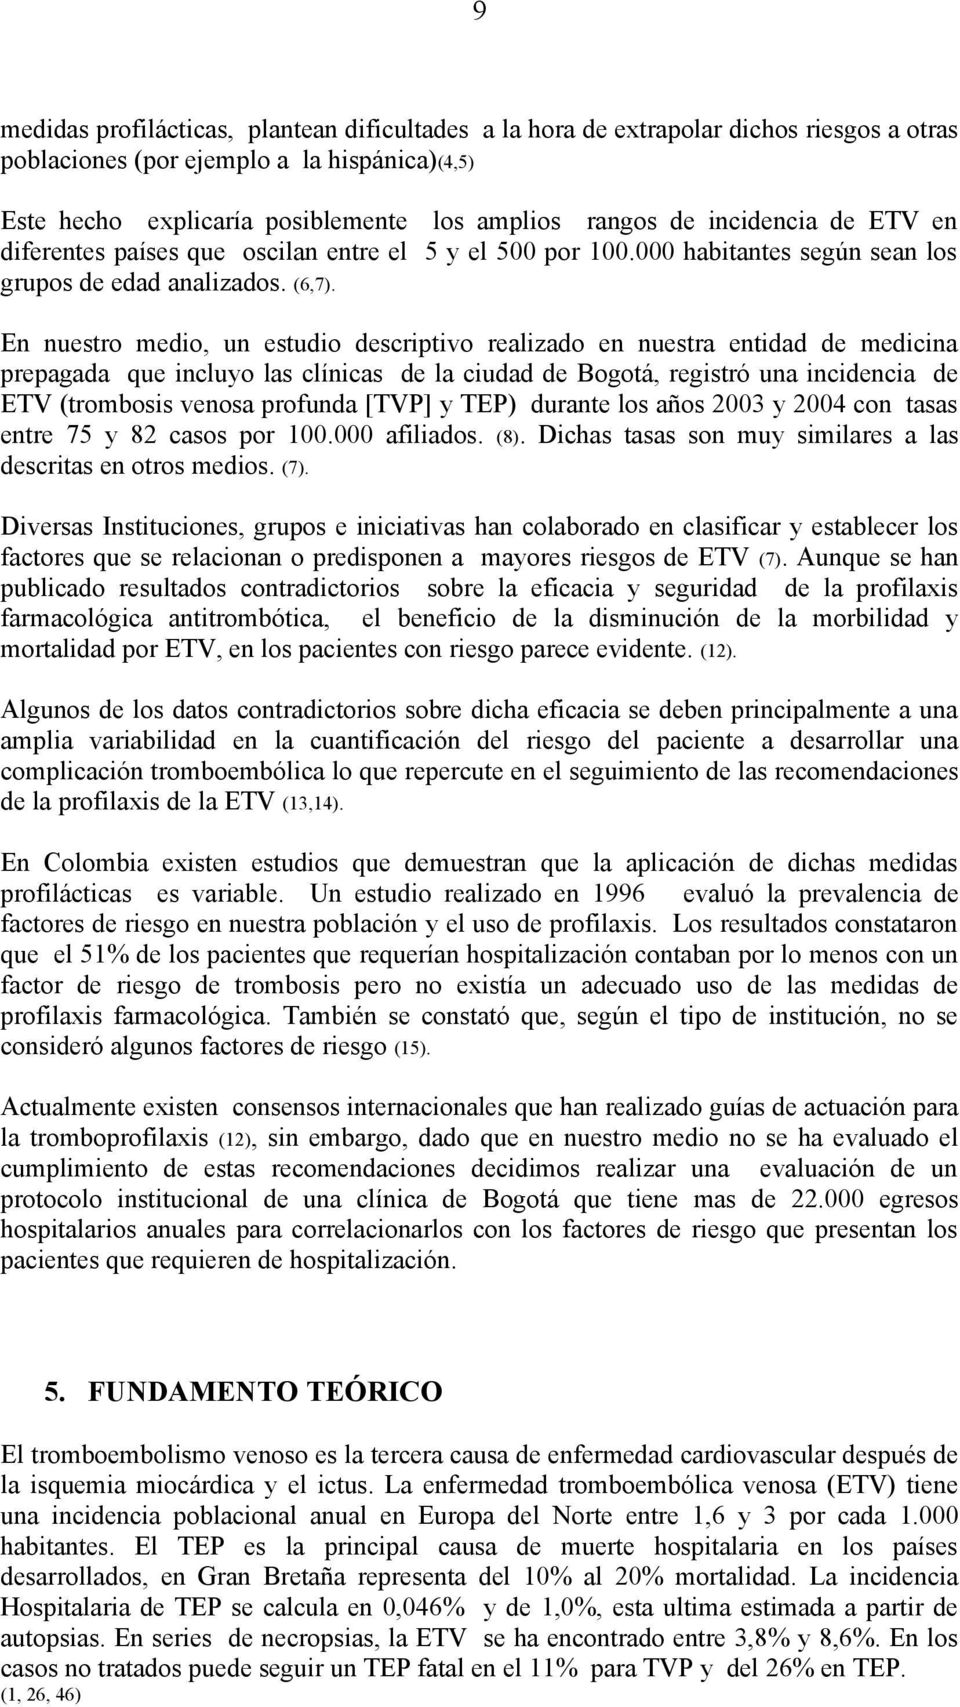 En nuestro medio, un estudio descriptivo realizado en nuestra entidad de medicina prepagada que incluyo las clínicas de la ciudad de Bogotá, registró una incidencia de ETV (trombosis venosa profunda